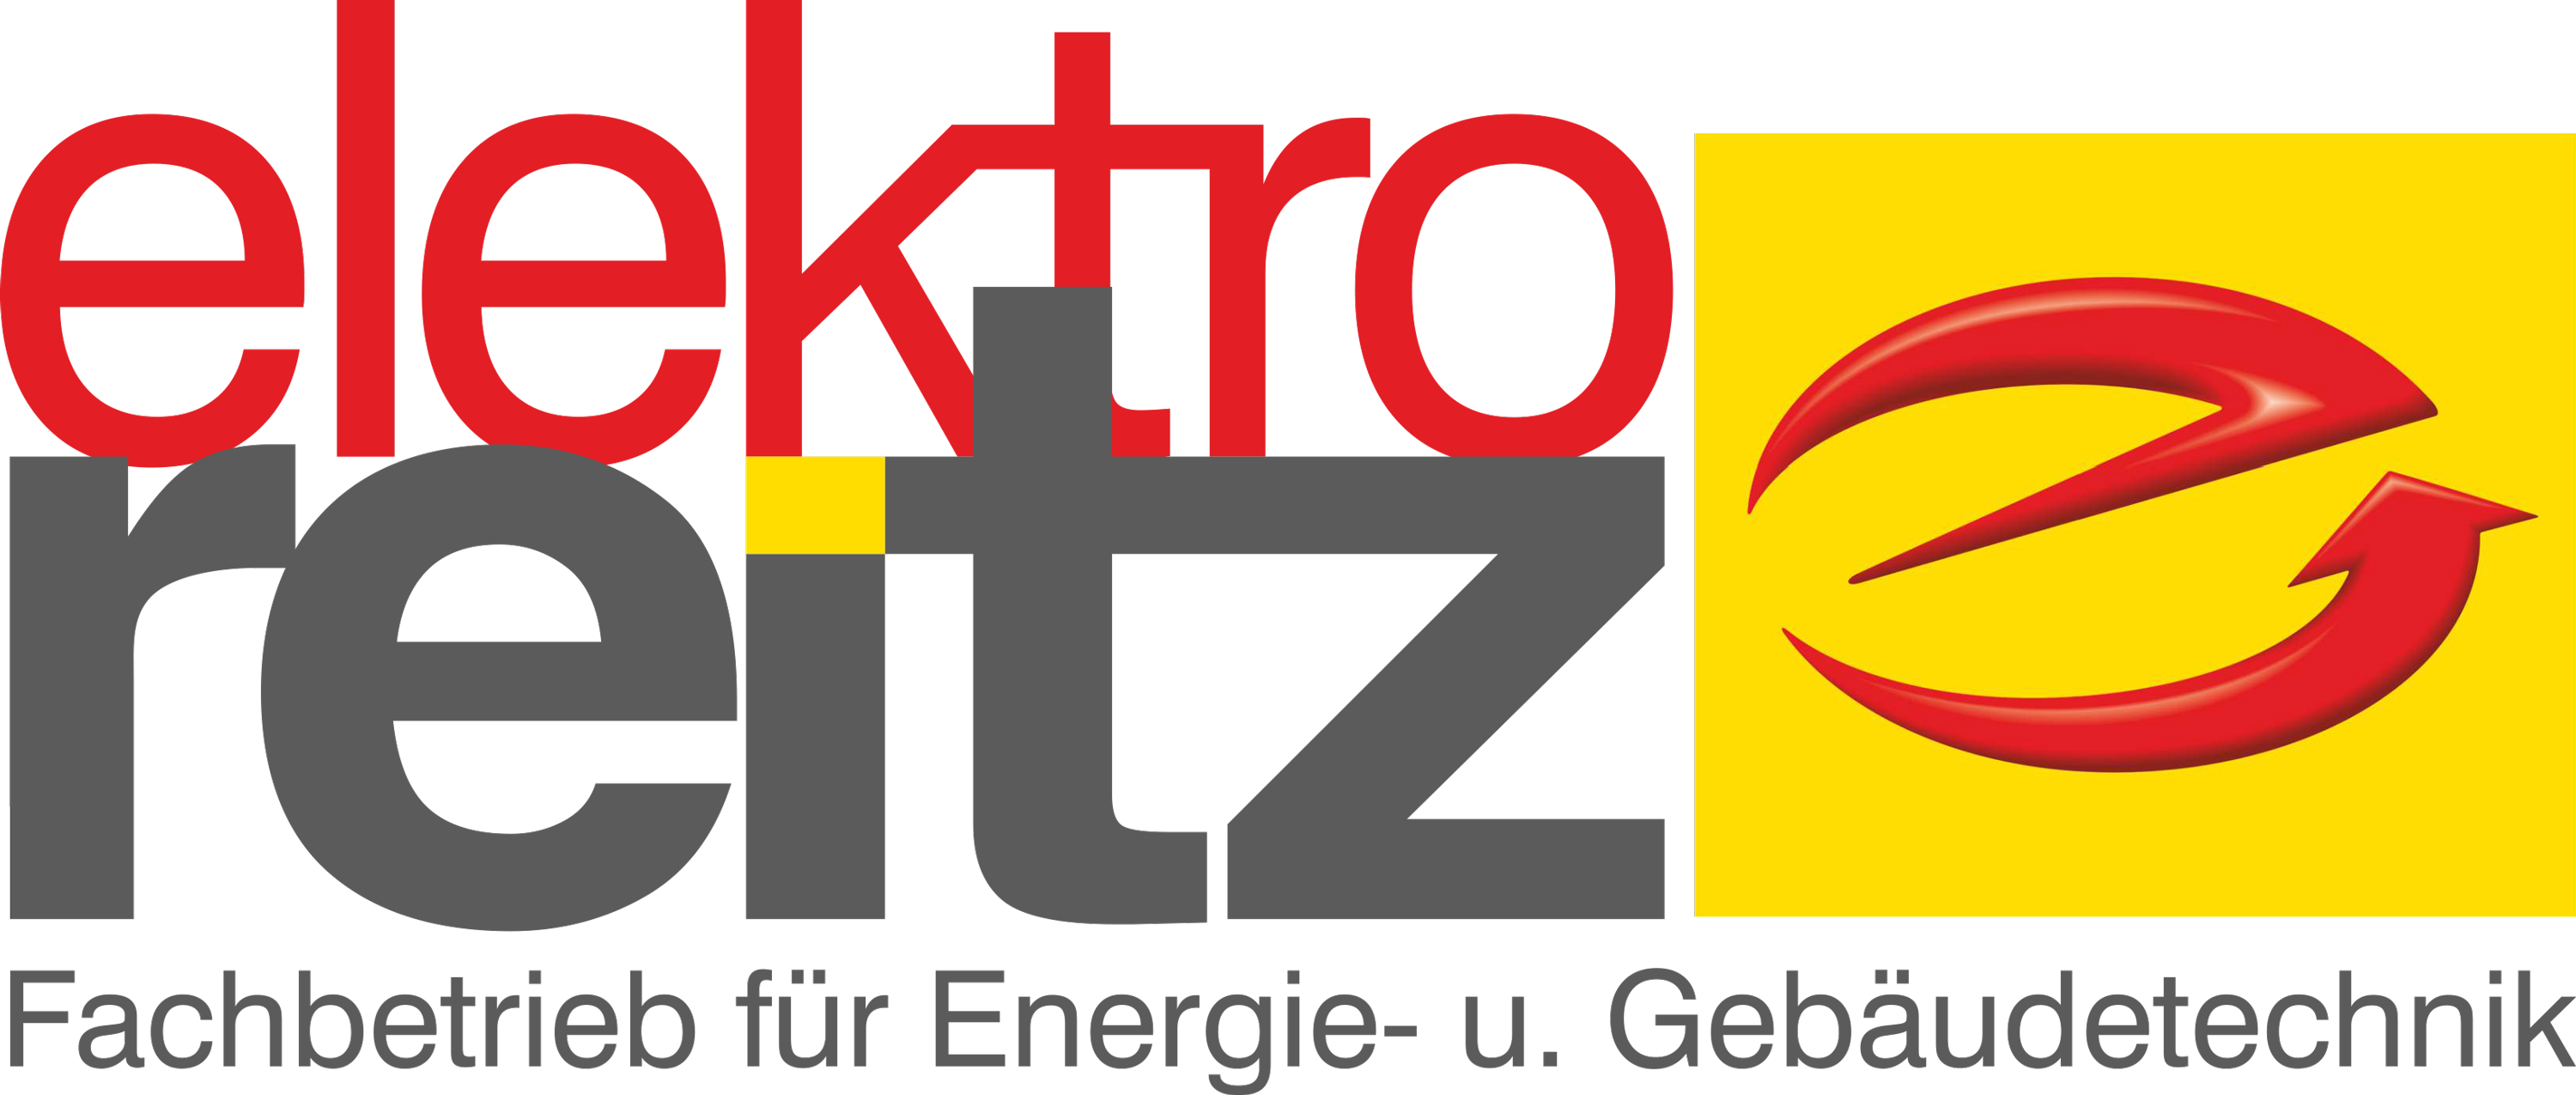 reitz-logo